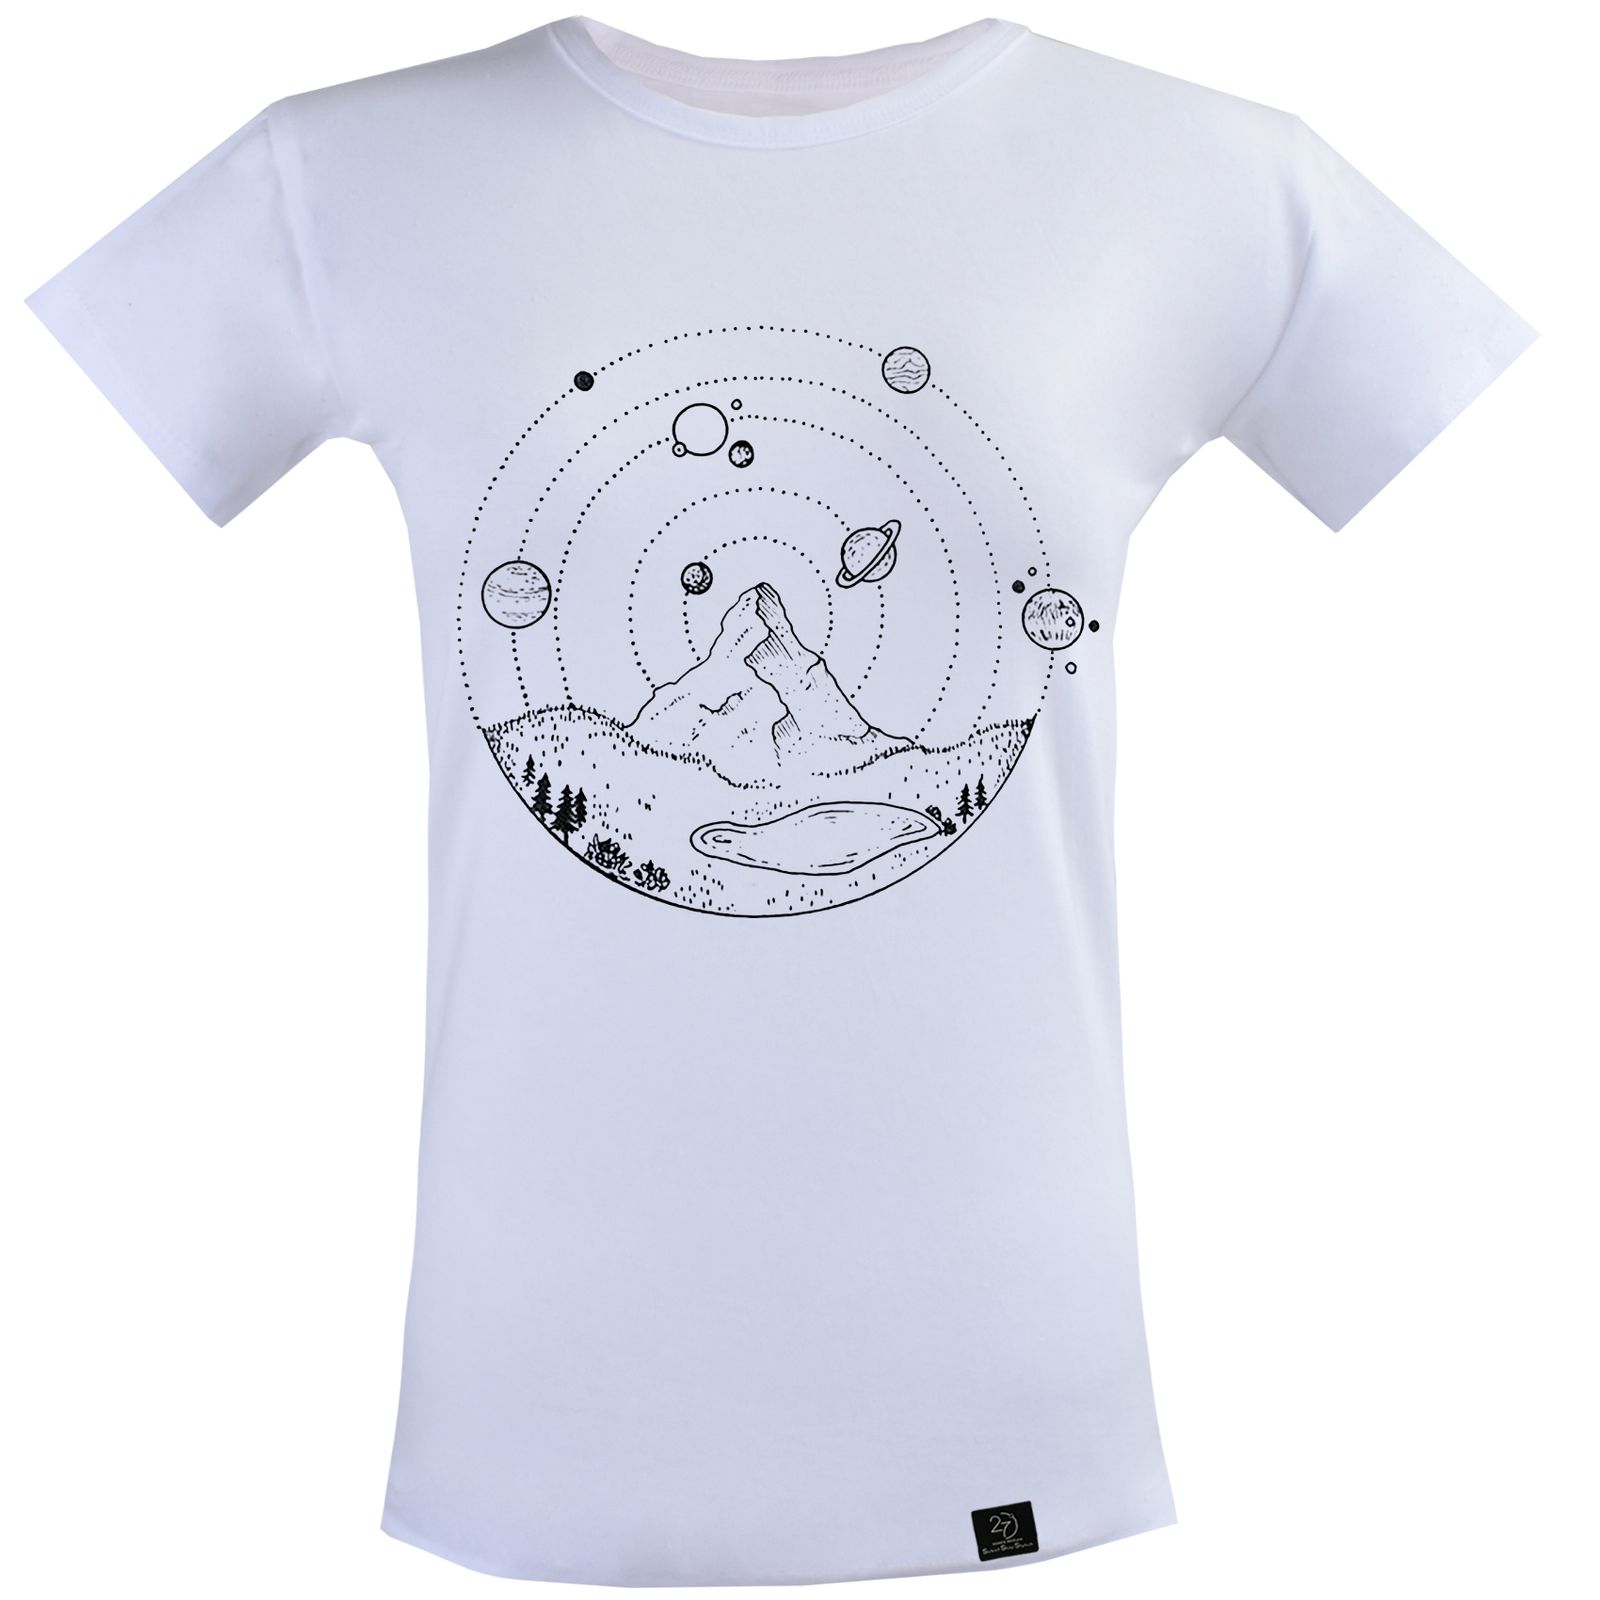 تی شرت آستین کوتاه زنانه 27 مدل سیاره و کوه کد V125 رنگ سفید -  - 1